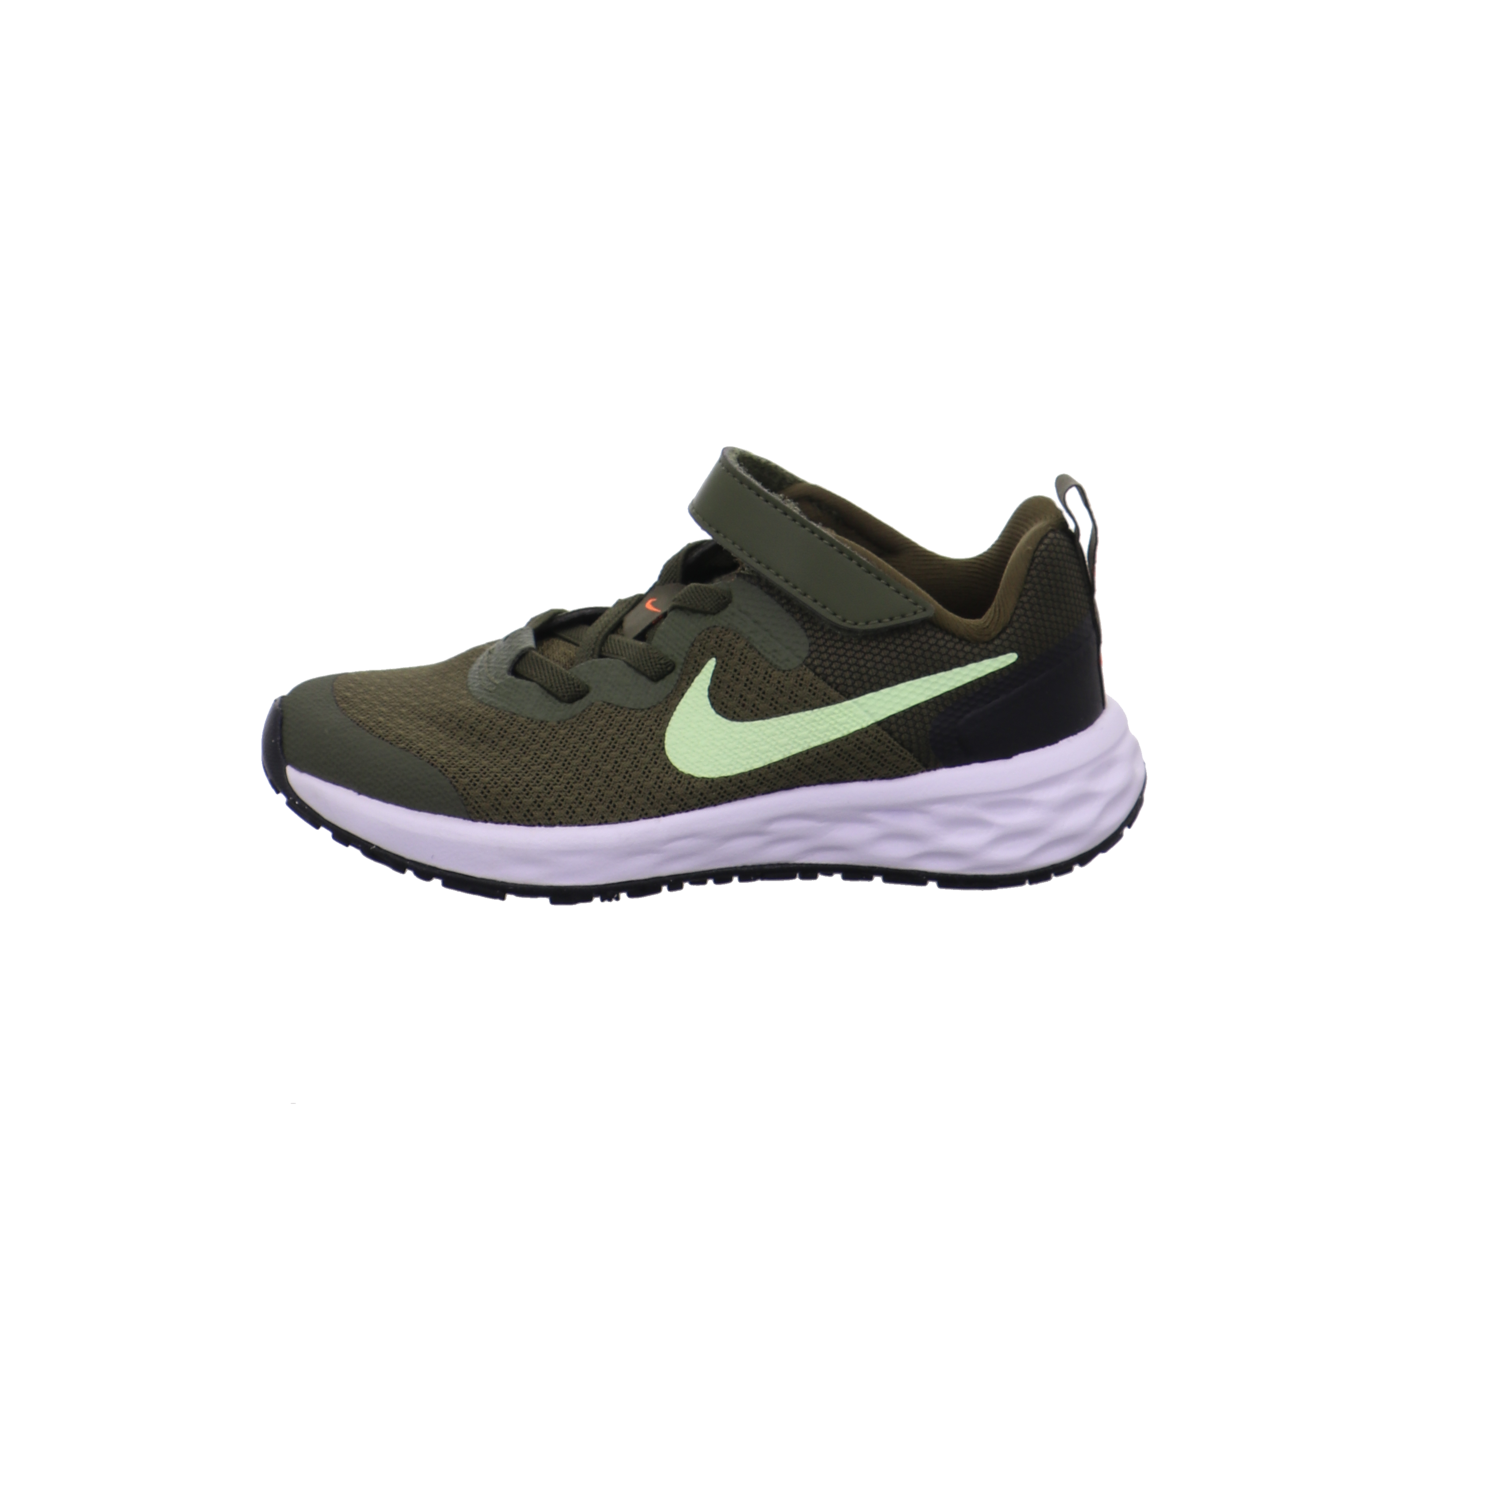 Nike Halbschuhe grün Bild1